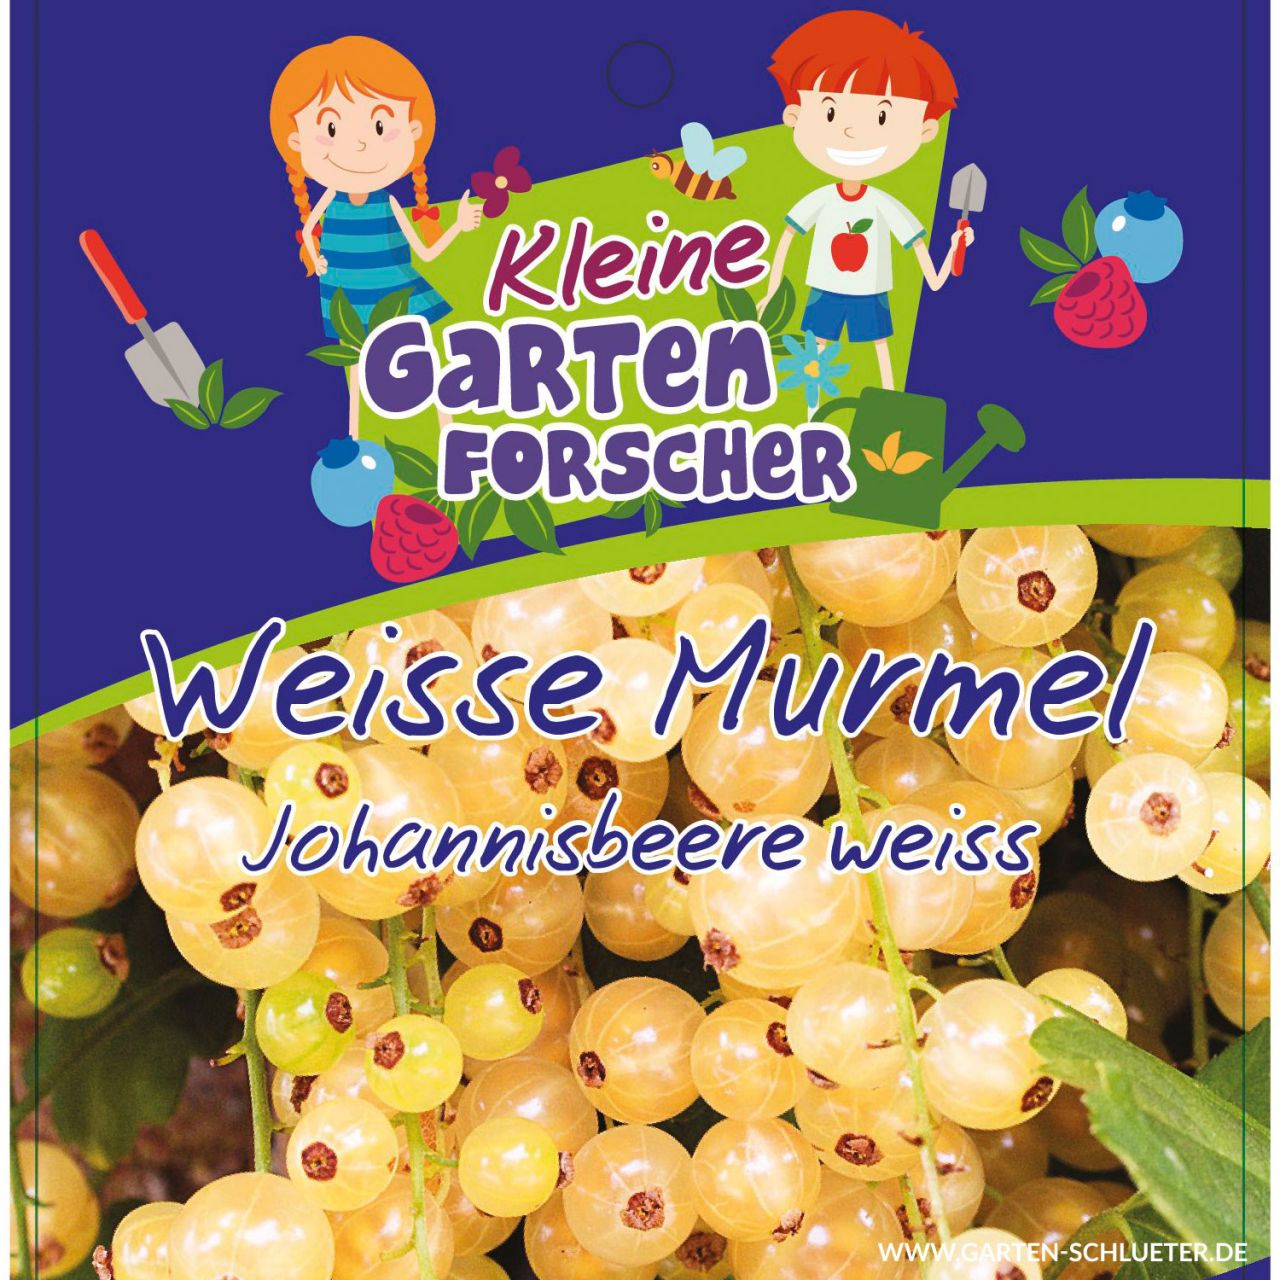 Kategorie <b>Beeren </b> - Weiße Johannisbeere 'Weiße Murmel'  - Kleine Gartenforscher - Ribes rubrum sativa